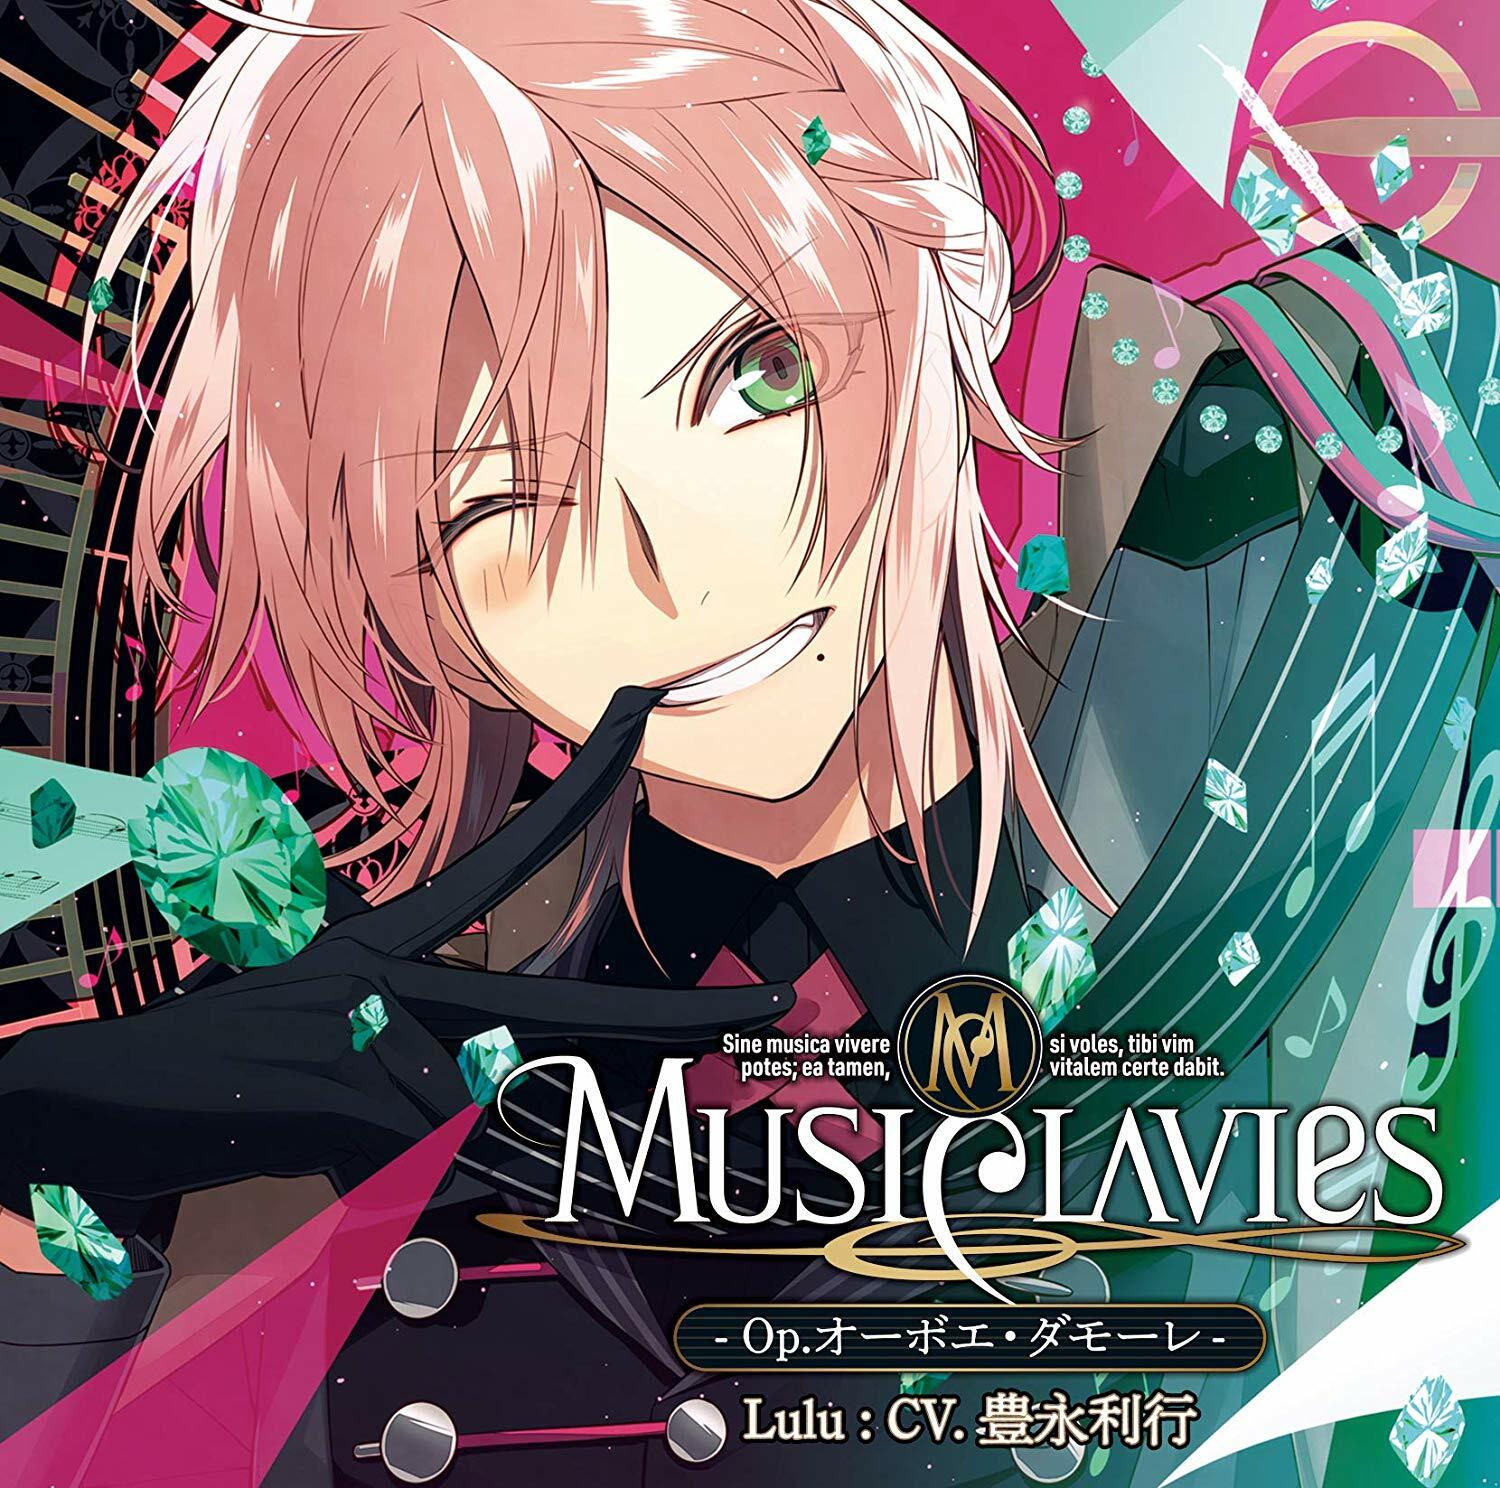 MusiClavies - Op.オ-ボエ·ダモ·レ -